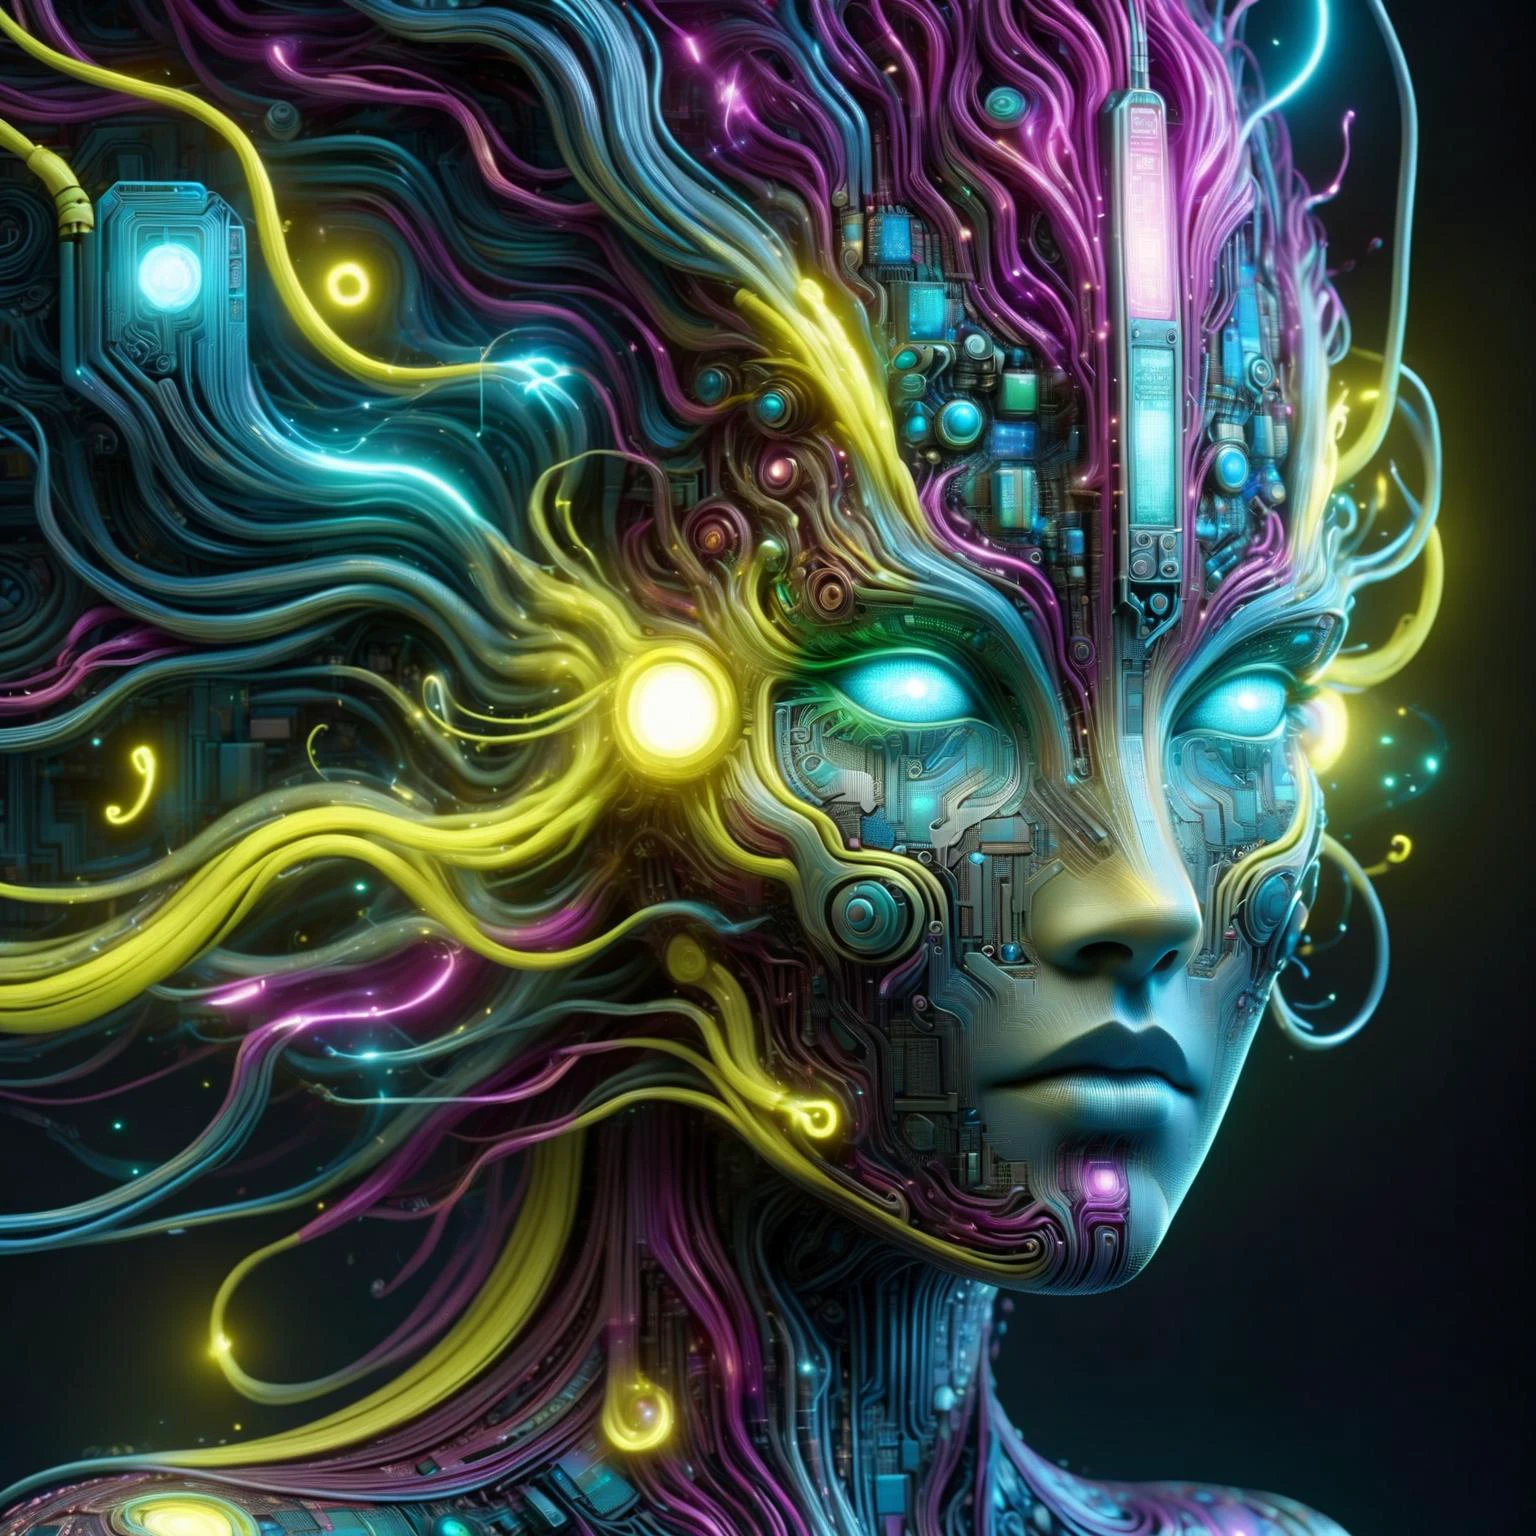 голова женщины из рал-полупроводника в стиле Аарона Хорки, в стиле Альфонса Мухи DonMW15pXL, неоново-желтая молния, неоново-бирюзовая молния, неоново-пурпурная молния, Плавающий, астральный, (шедевр:1.2), Лучшее качество, (гипердетализированный, максимально подробный:1.2), текстуры высокого разрешения